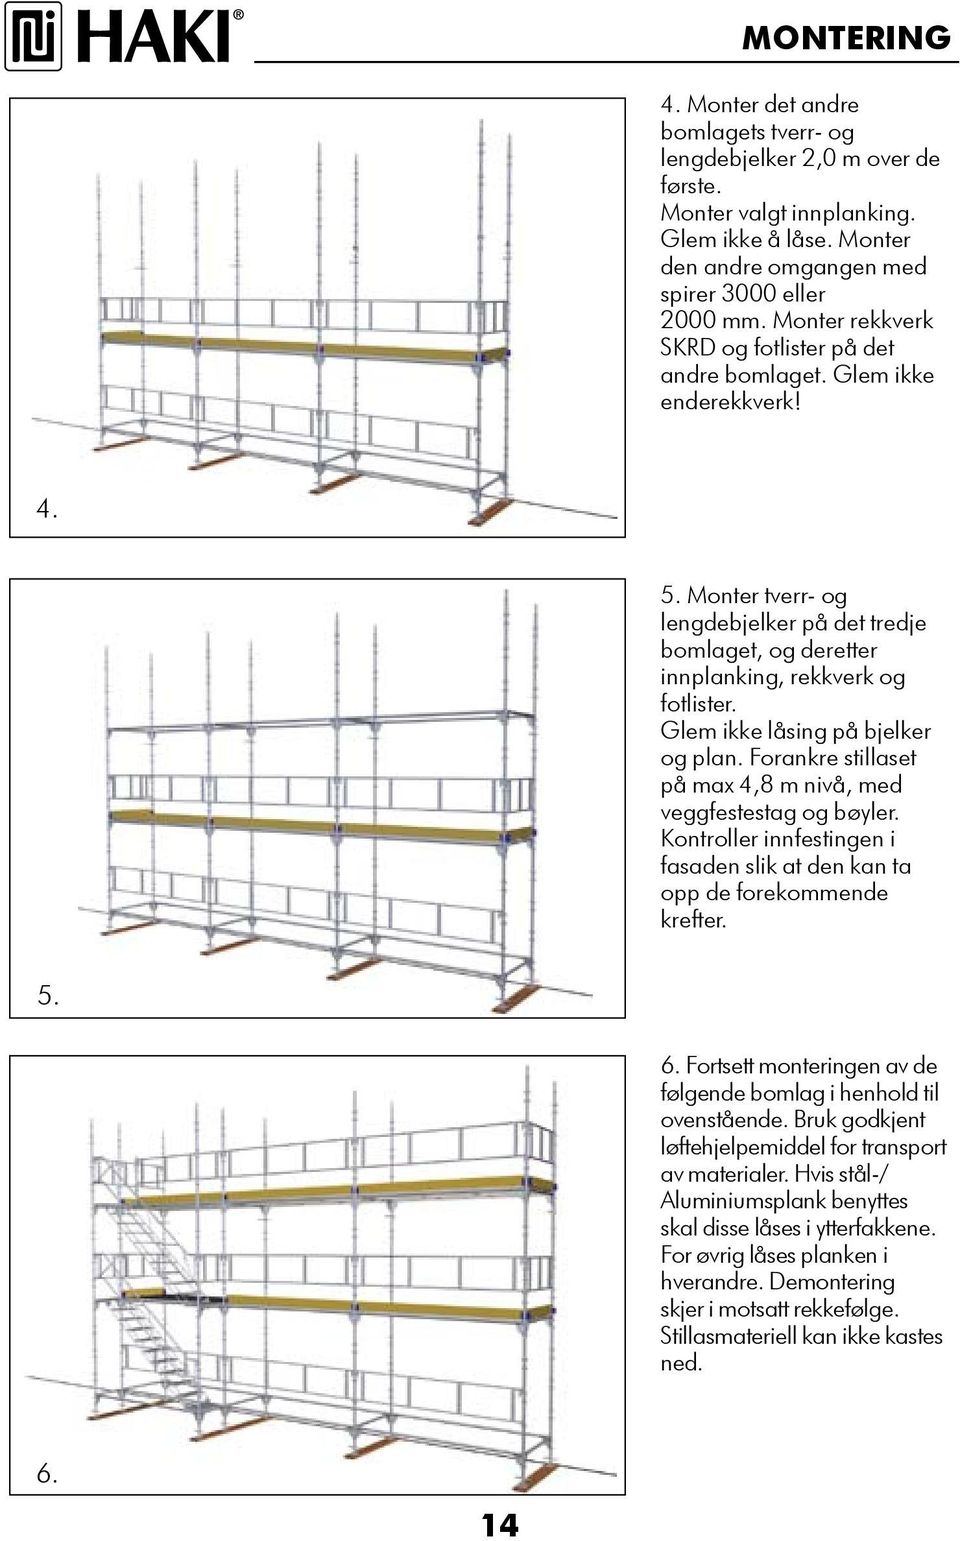 Glem ikke låsing på bjelker og plan. Forankre stillaset på max 4,8 m nivå, med veggfestestag og bøyler. Kontroller innfestingen i fasaden slik at den kan ta opp de forekommende krefter.